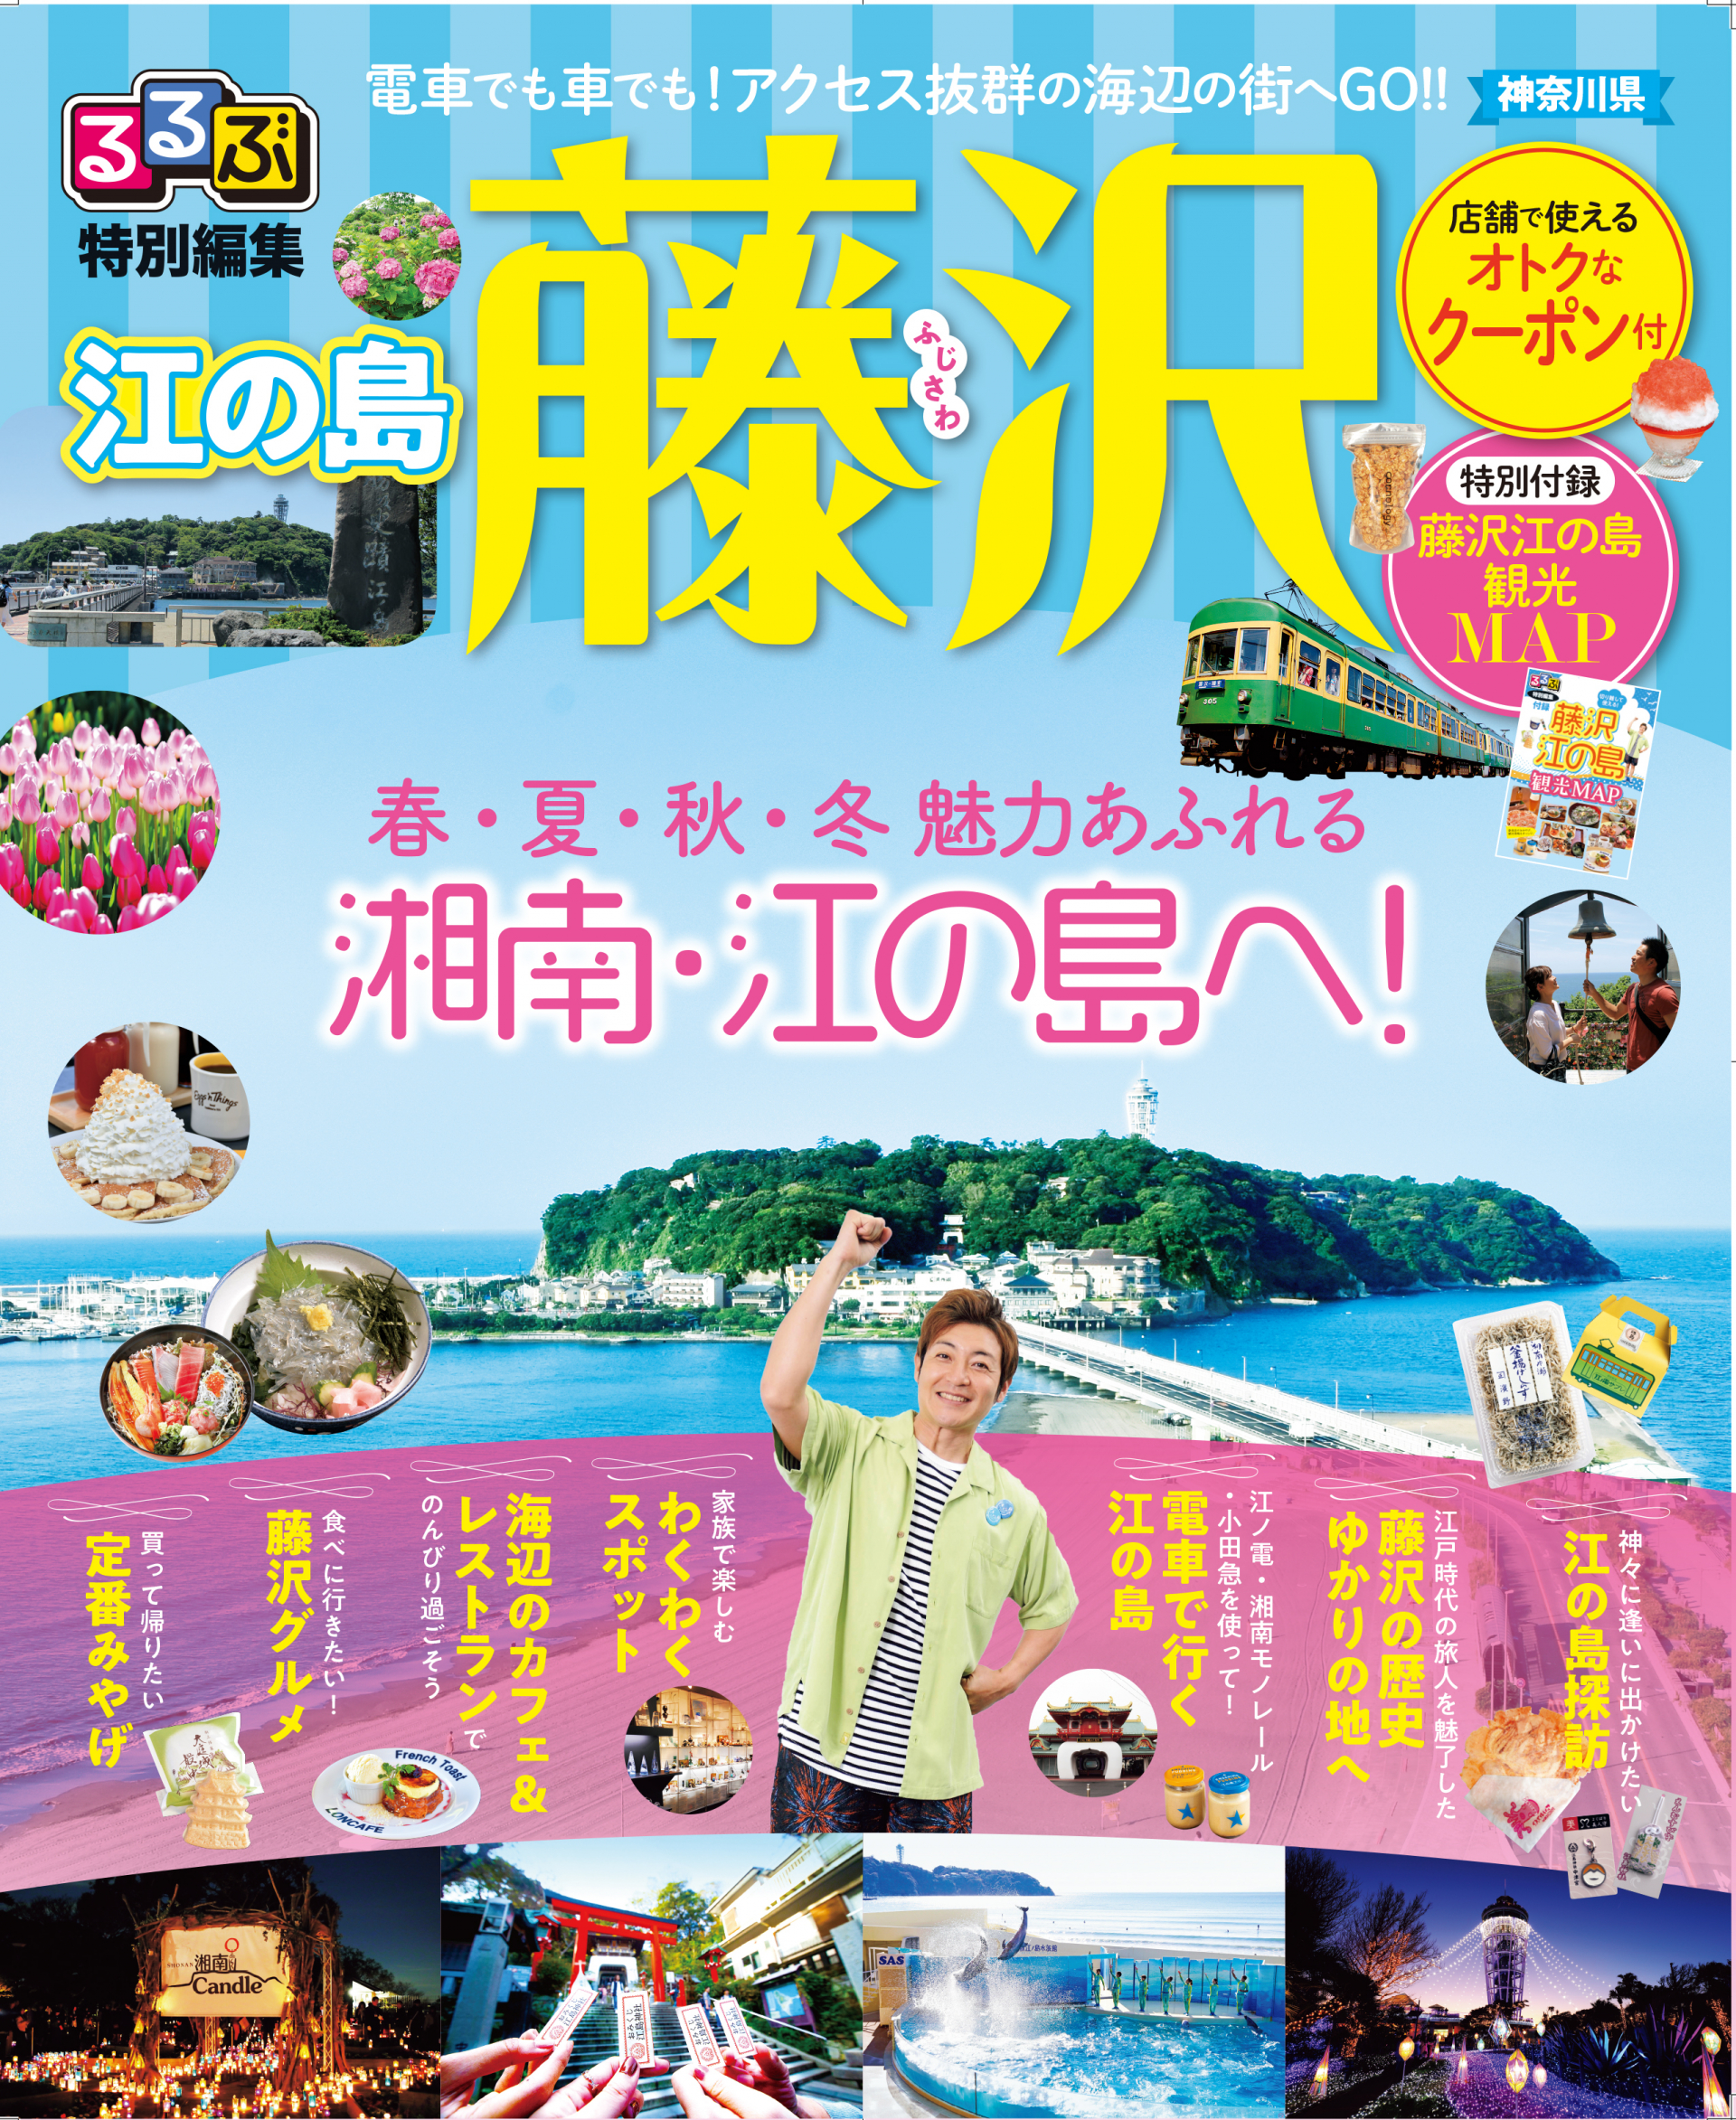 観光パンフレット インフォメーション 藤沢市観光公式ホームページ